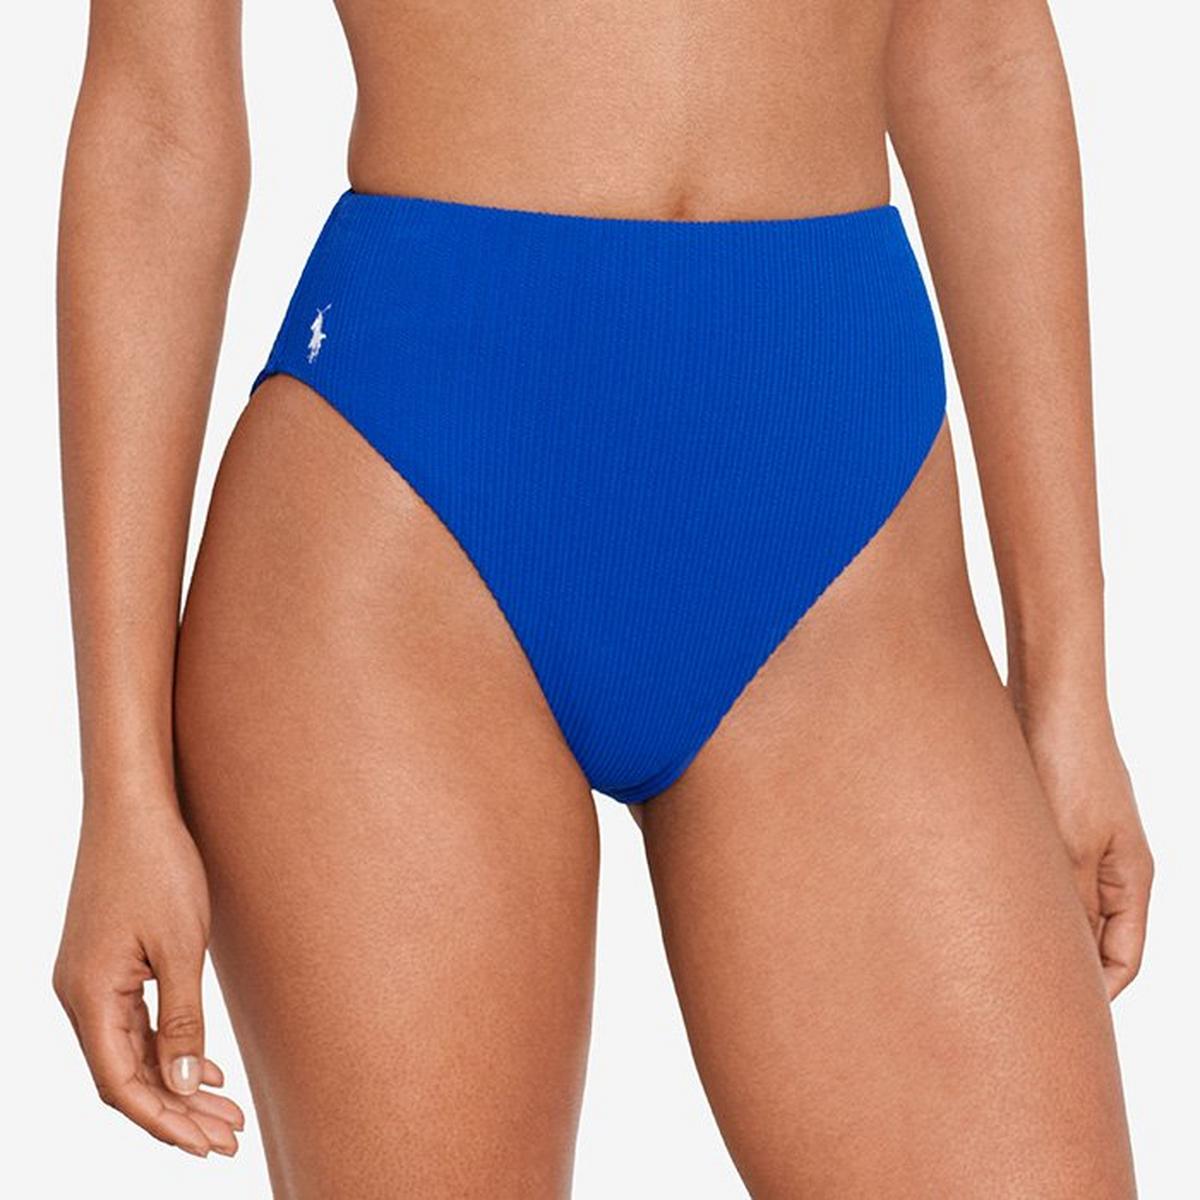 Women's Twisted-Rib Mid Bikini Bottom